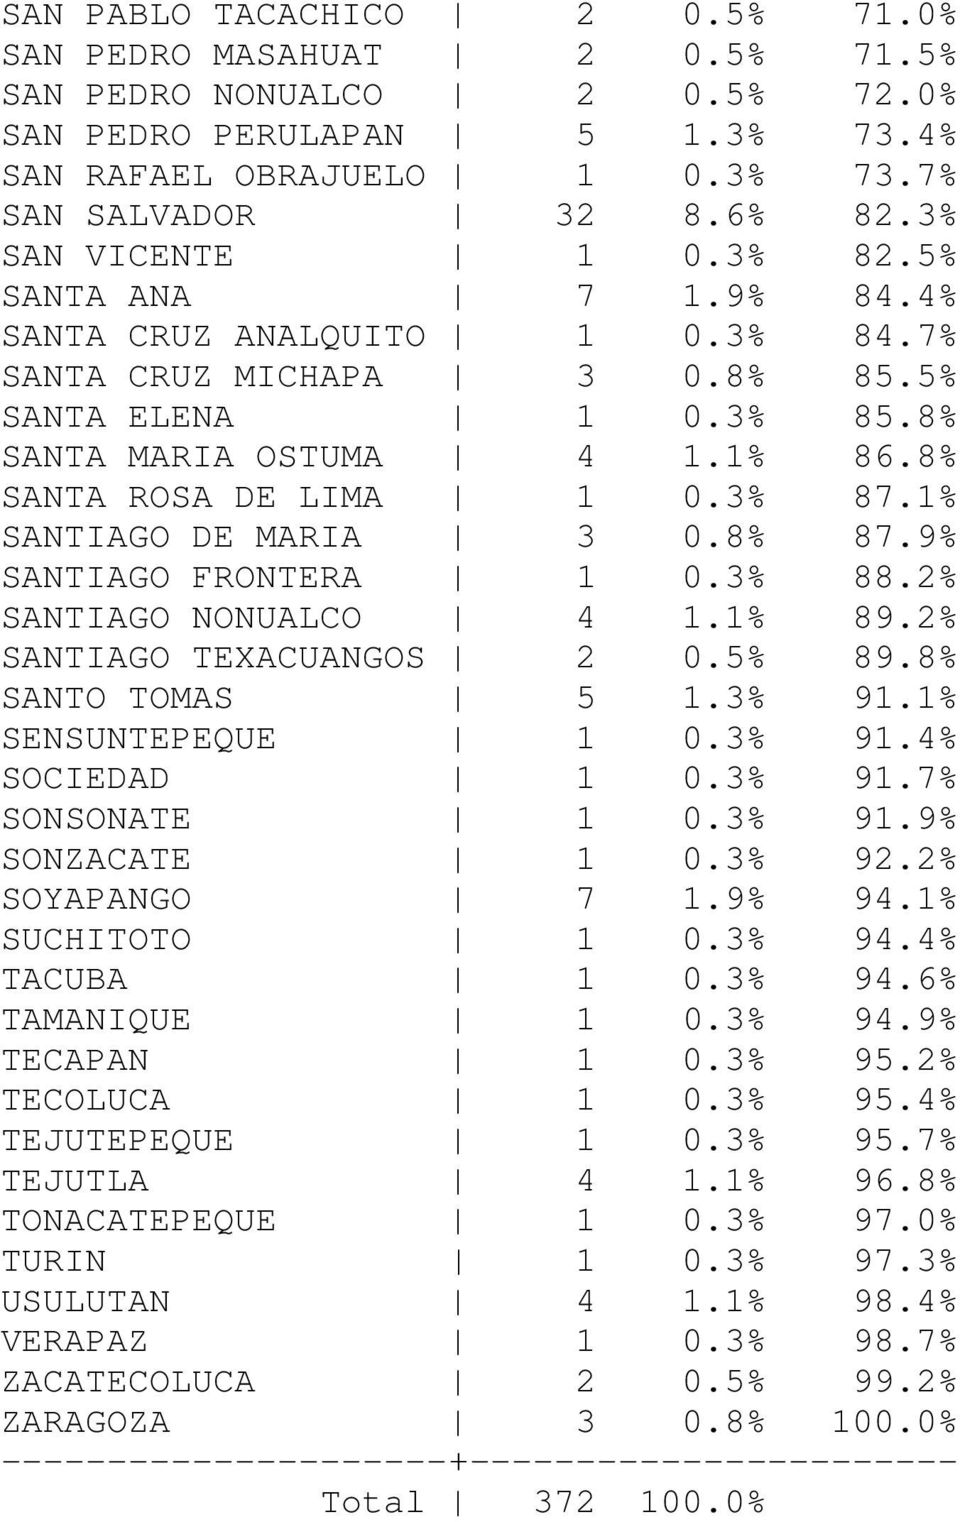 3% 87.1% SANTIAGO DE MARIA 3 0.8% 87.9% SANTIAGO FRONTERA 1 0.3% 88.2% SANTIAGO NONUALCO 4 1.1% 89.2% SANTIAGO TEXACUANGOS 2 0.5% 89.8% SANTO TOMAS 5 1.3% 91.1% SENSUNTEPEQUE 1 0.3% 91.4% SOCIEDAD 1 0.